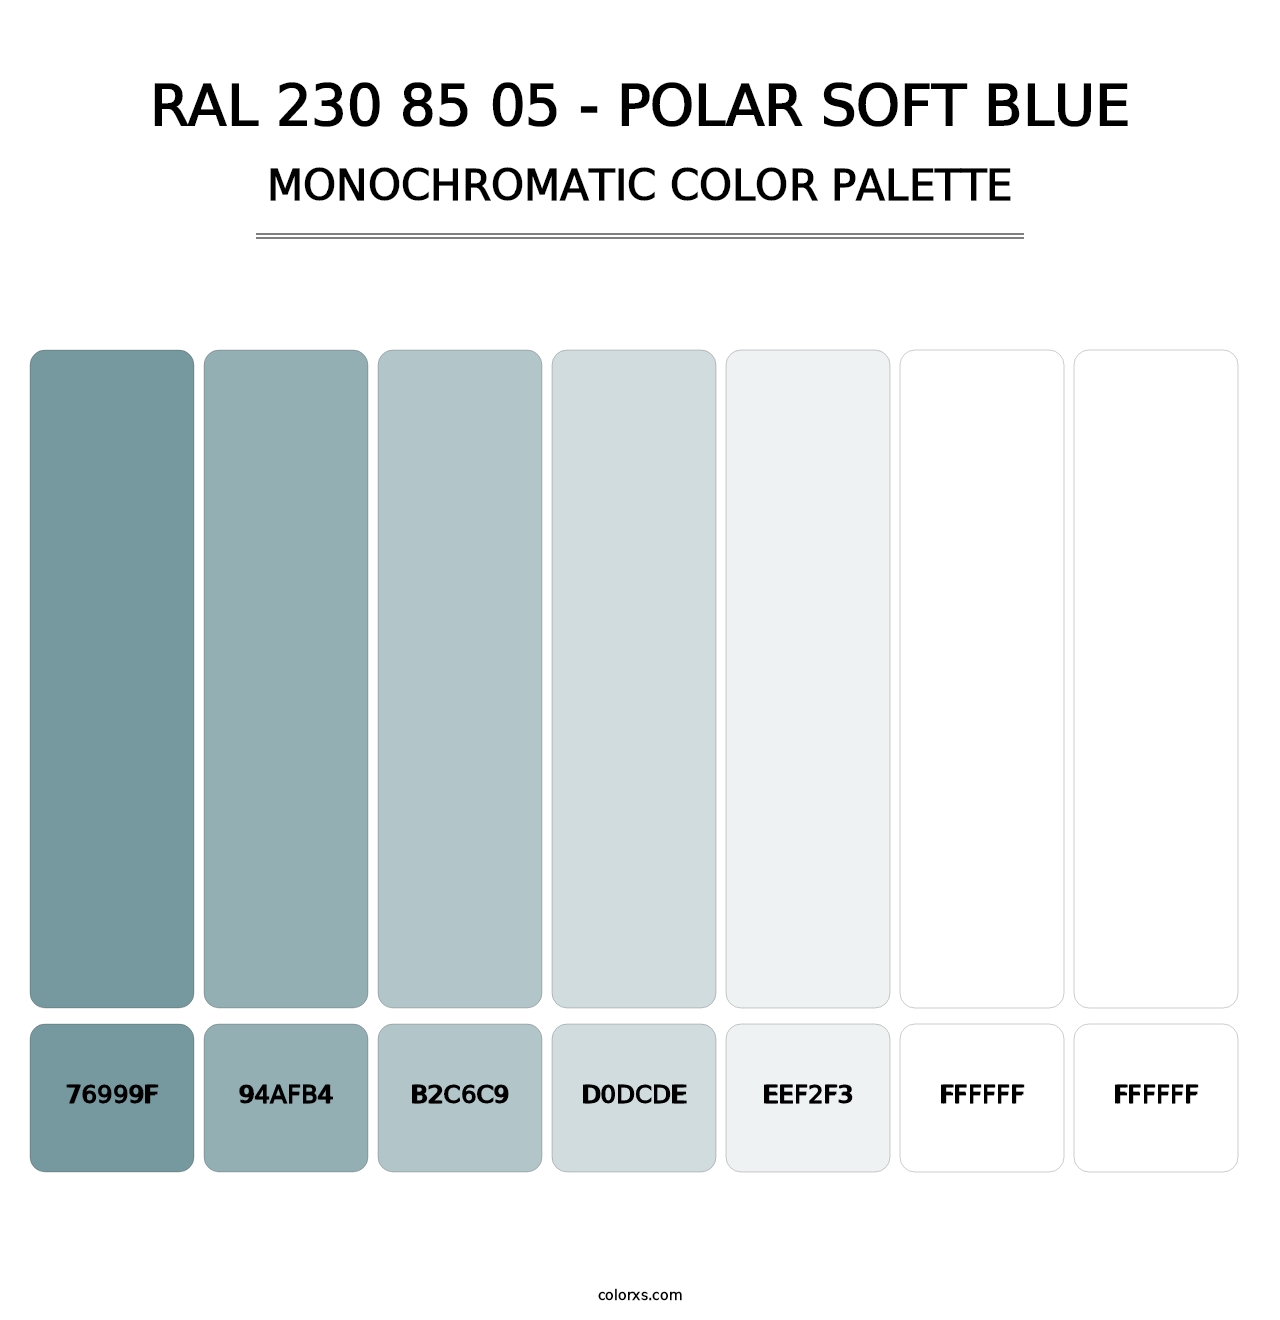 RAL 230 85 05 - Polar Soft Blue - Monochromatic Color Palette